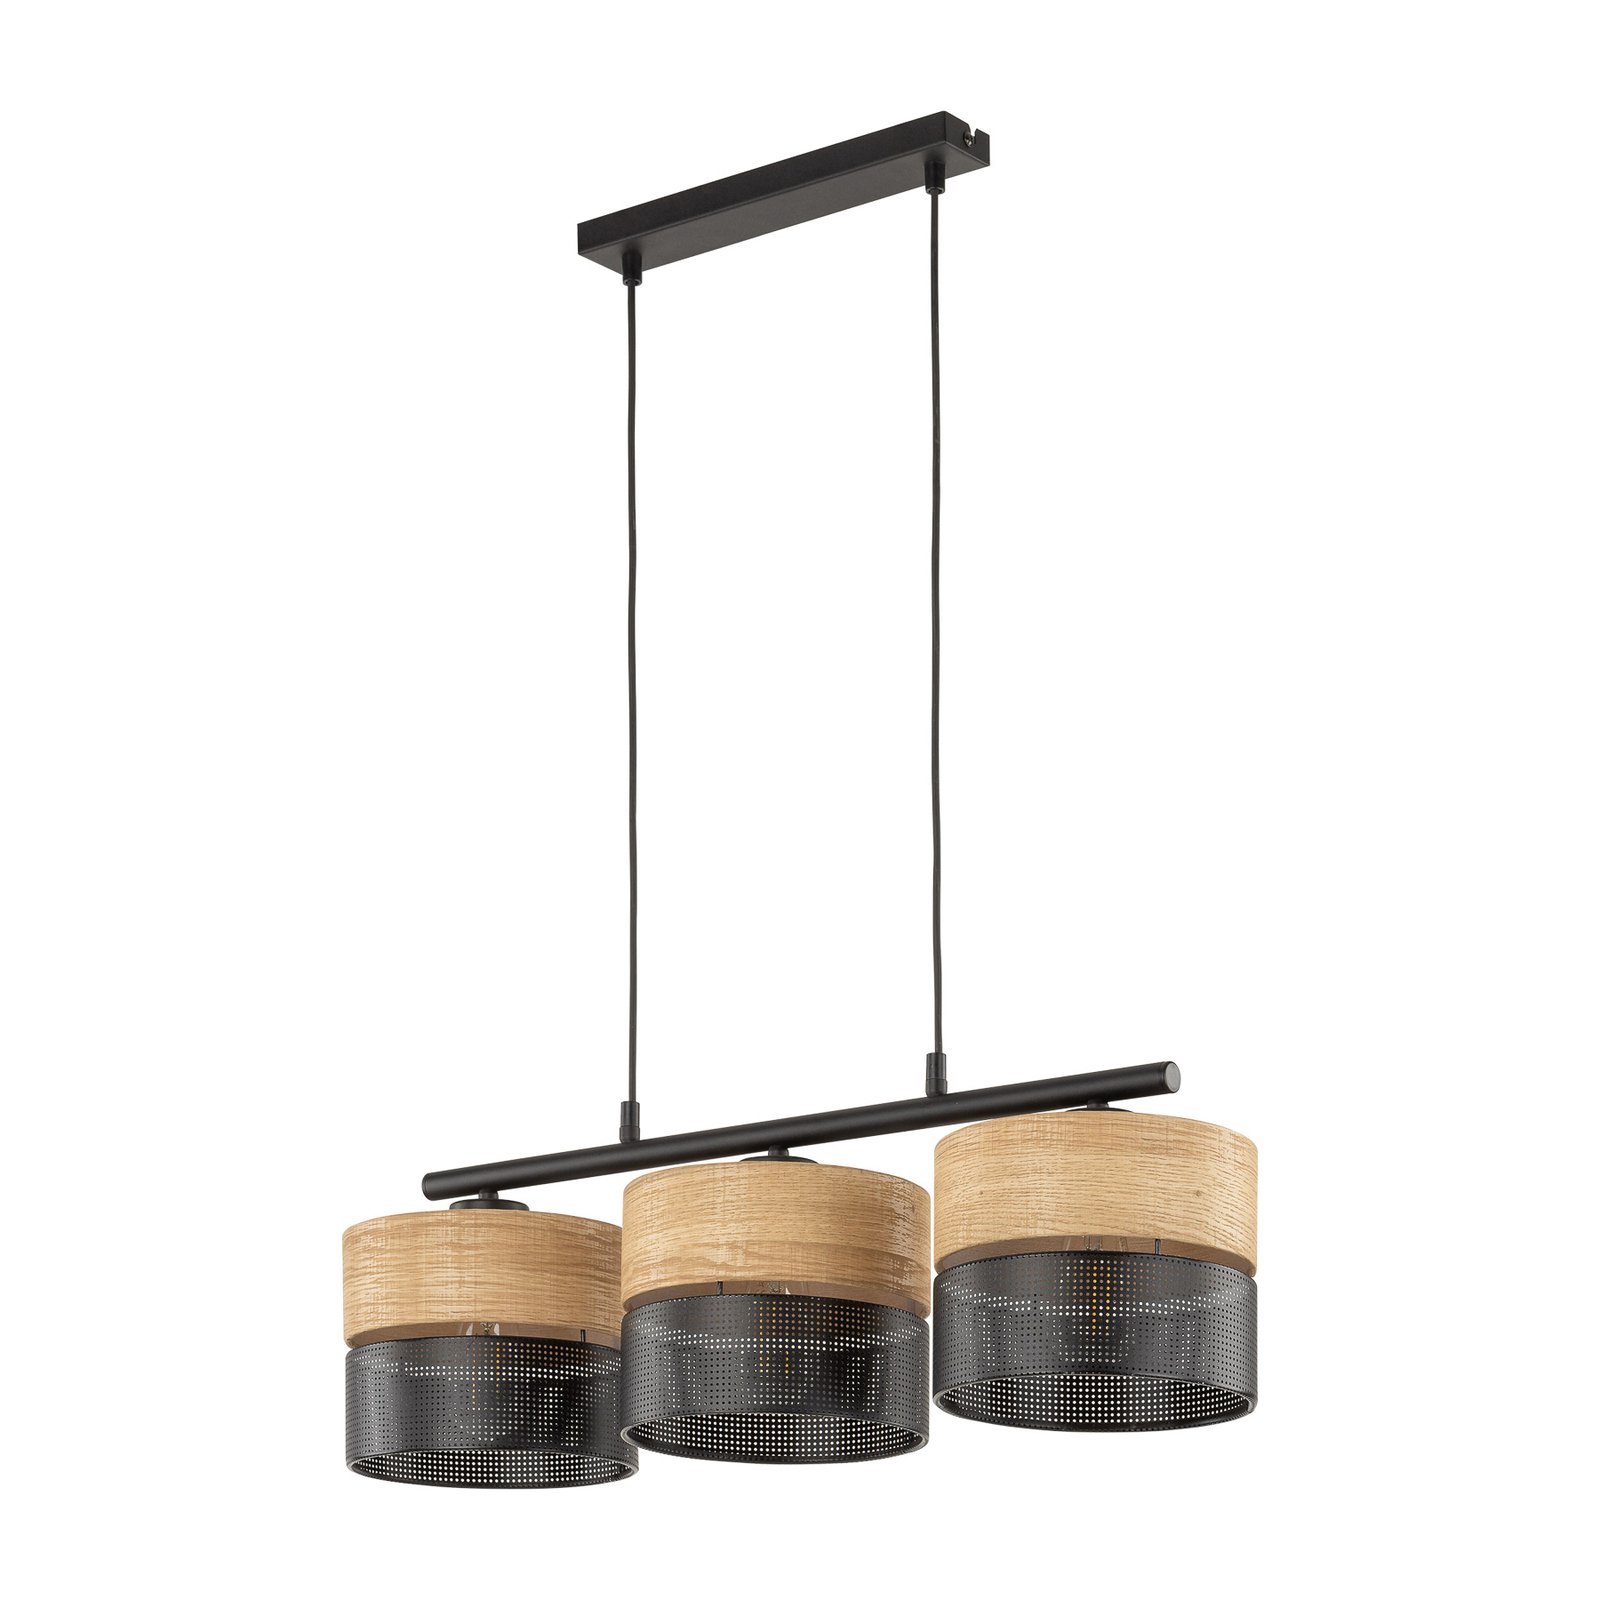 Nicol hanglamp, zwart/hout-effect, 70x20 cm 3-lamps 3 x E27